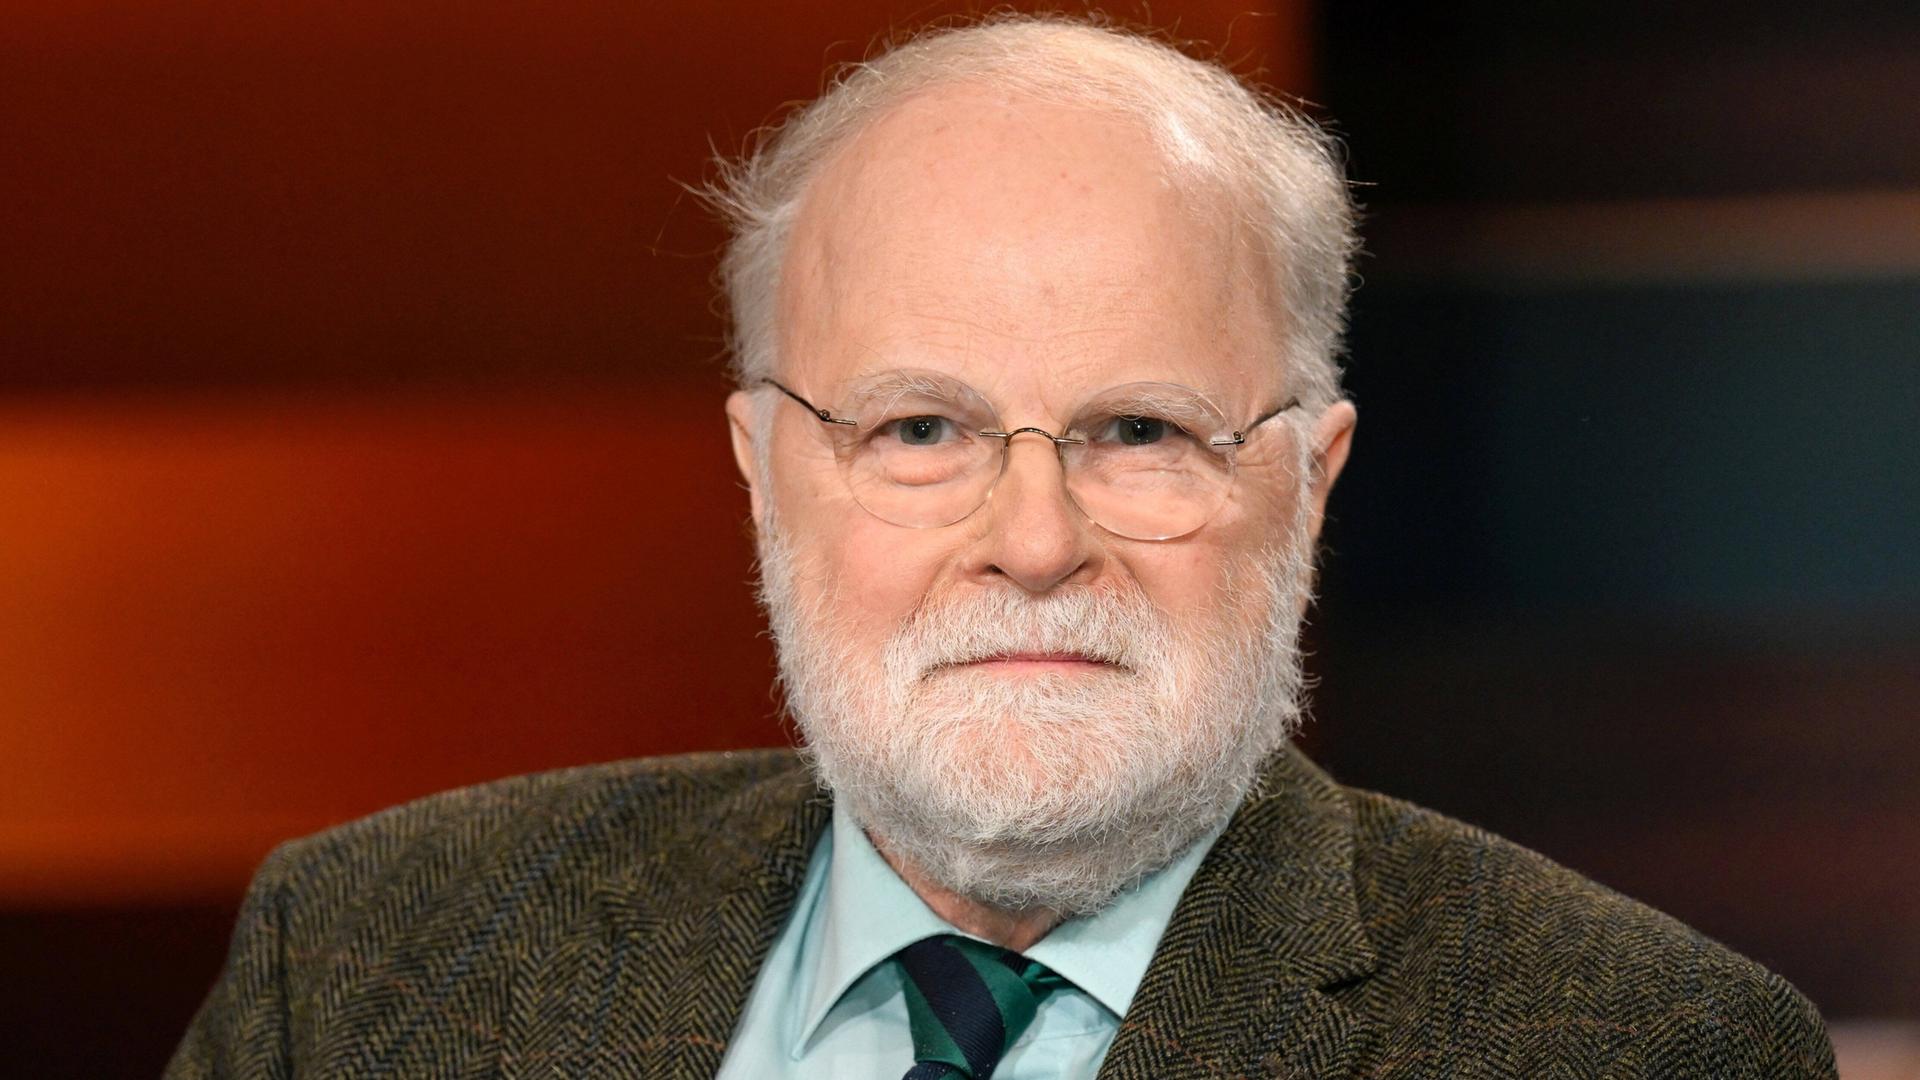 Ein Porträtbild des Theologen, Psychiater und Publizisten Manfred Lütz in der ZDF-Talkshow "Markus Lanz".